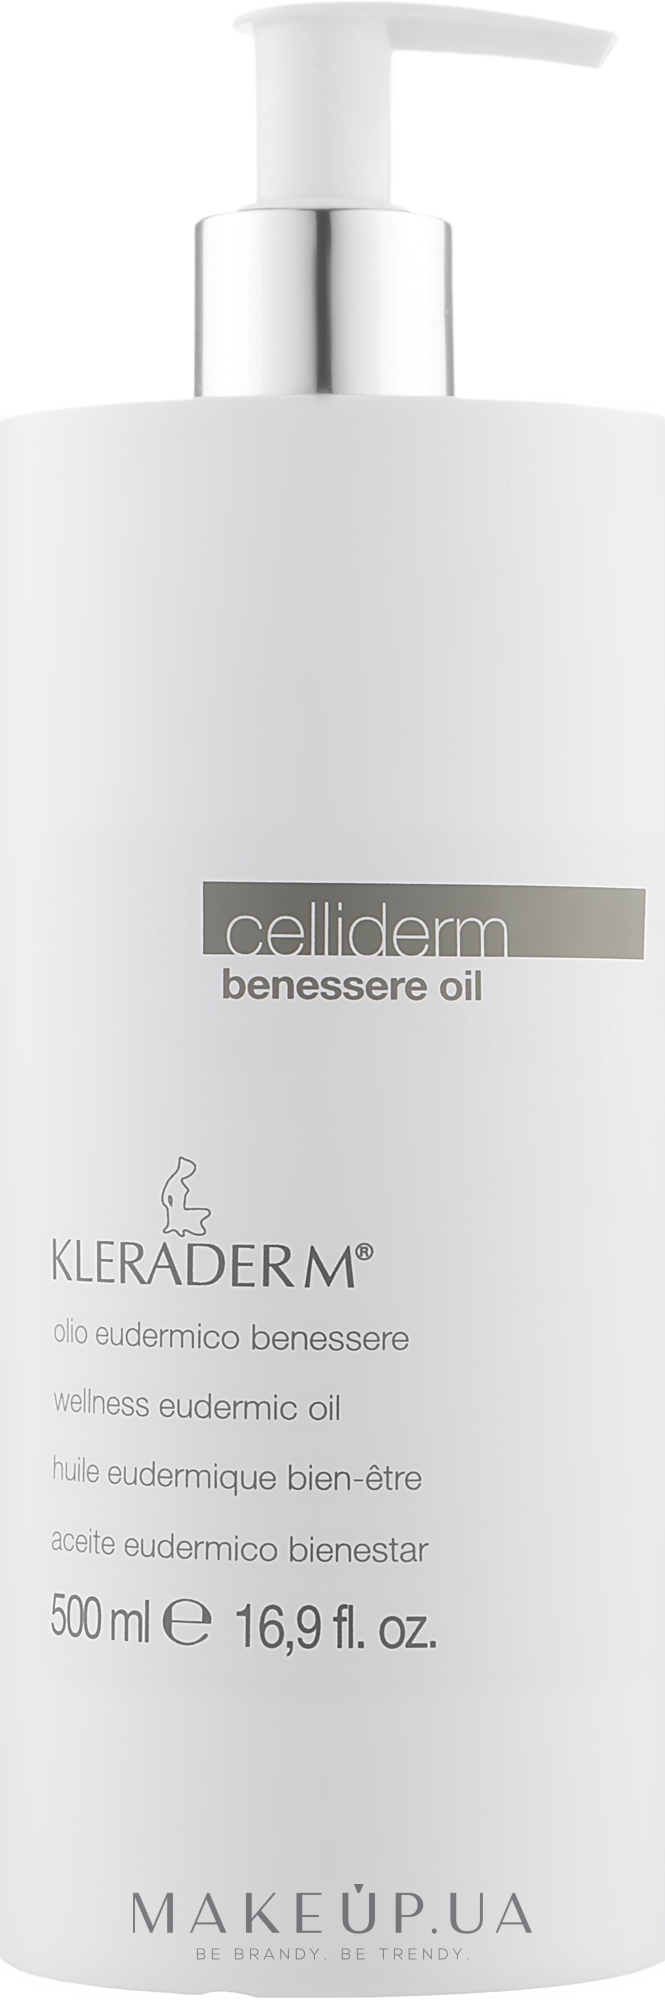 Олія для здоров'я шкіри - Kleraderm Celliderm Benessere Oil — фото 500ml